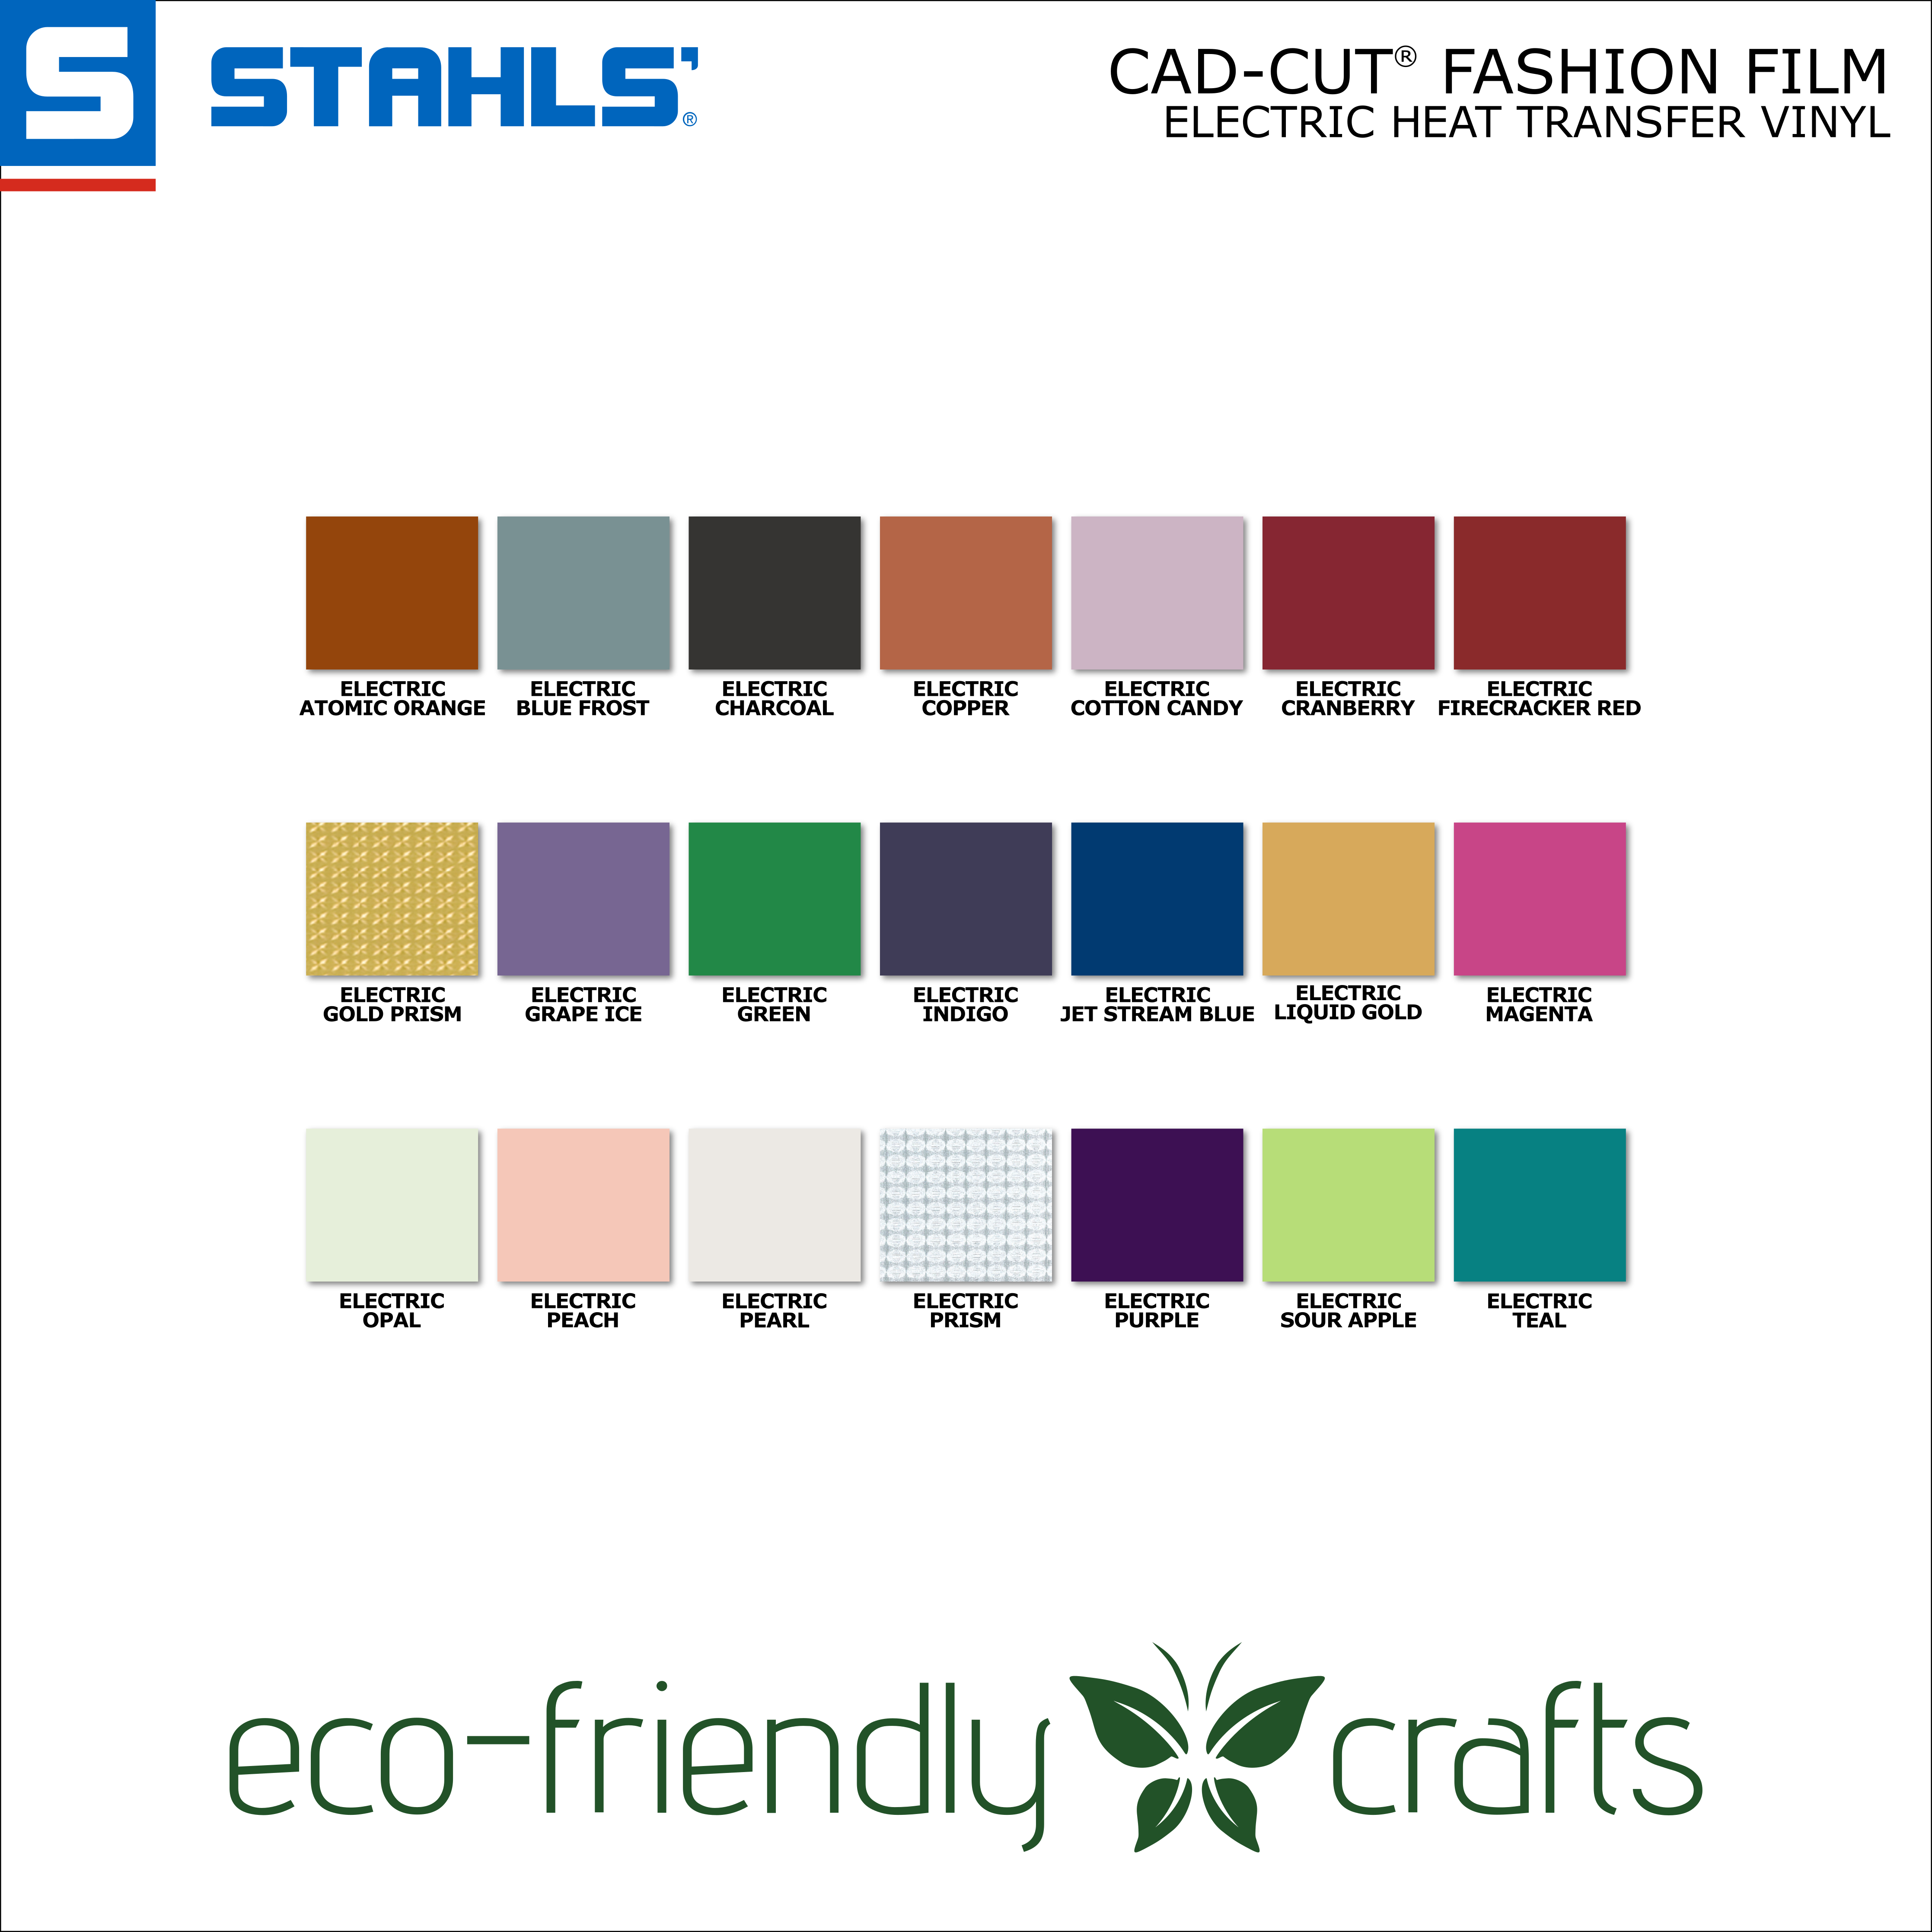 Stahls CAD-CUT® Fashion-FILM Electric Heat Transfer Vinyl